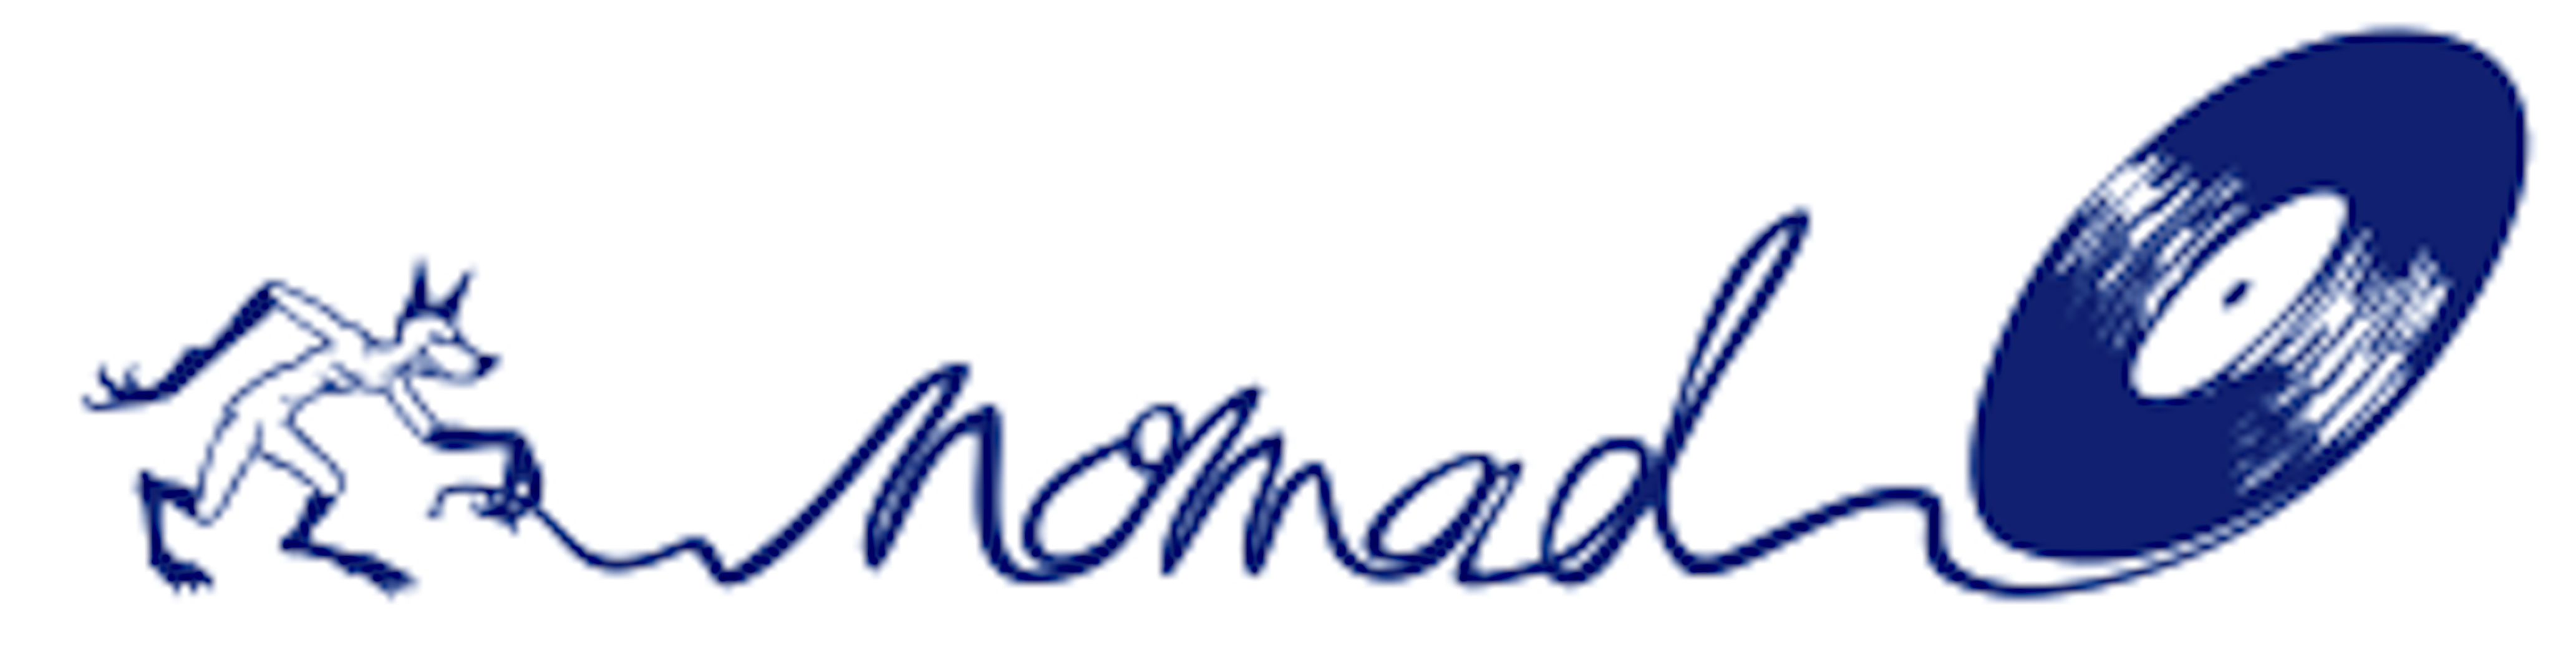 image logo dj nomad